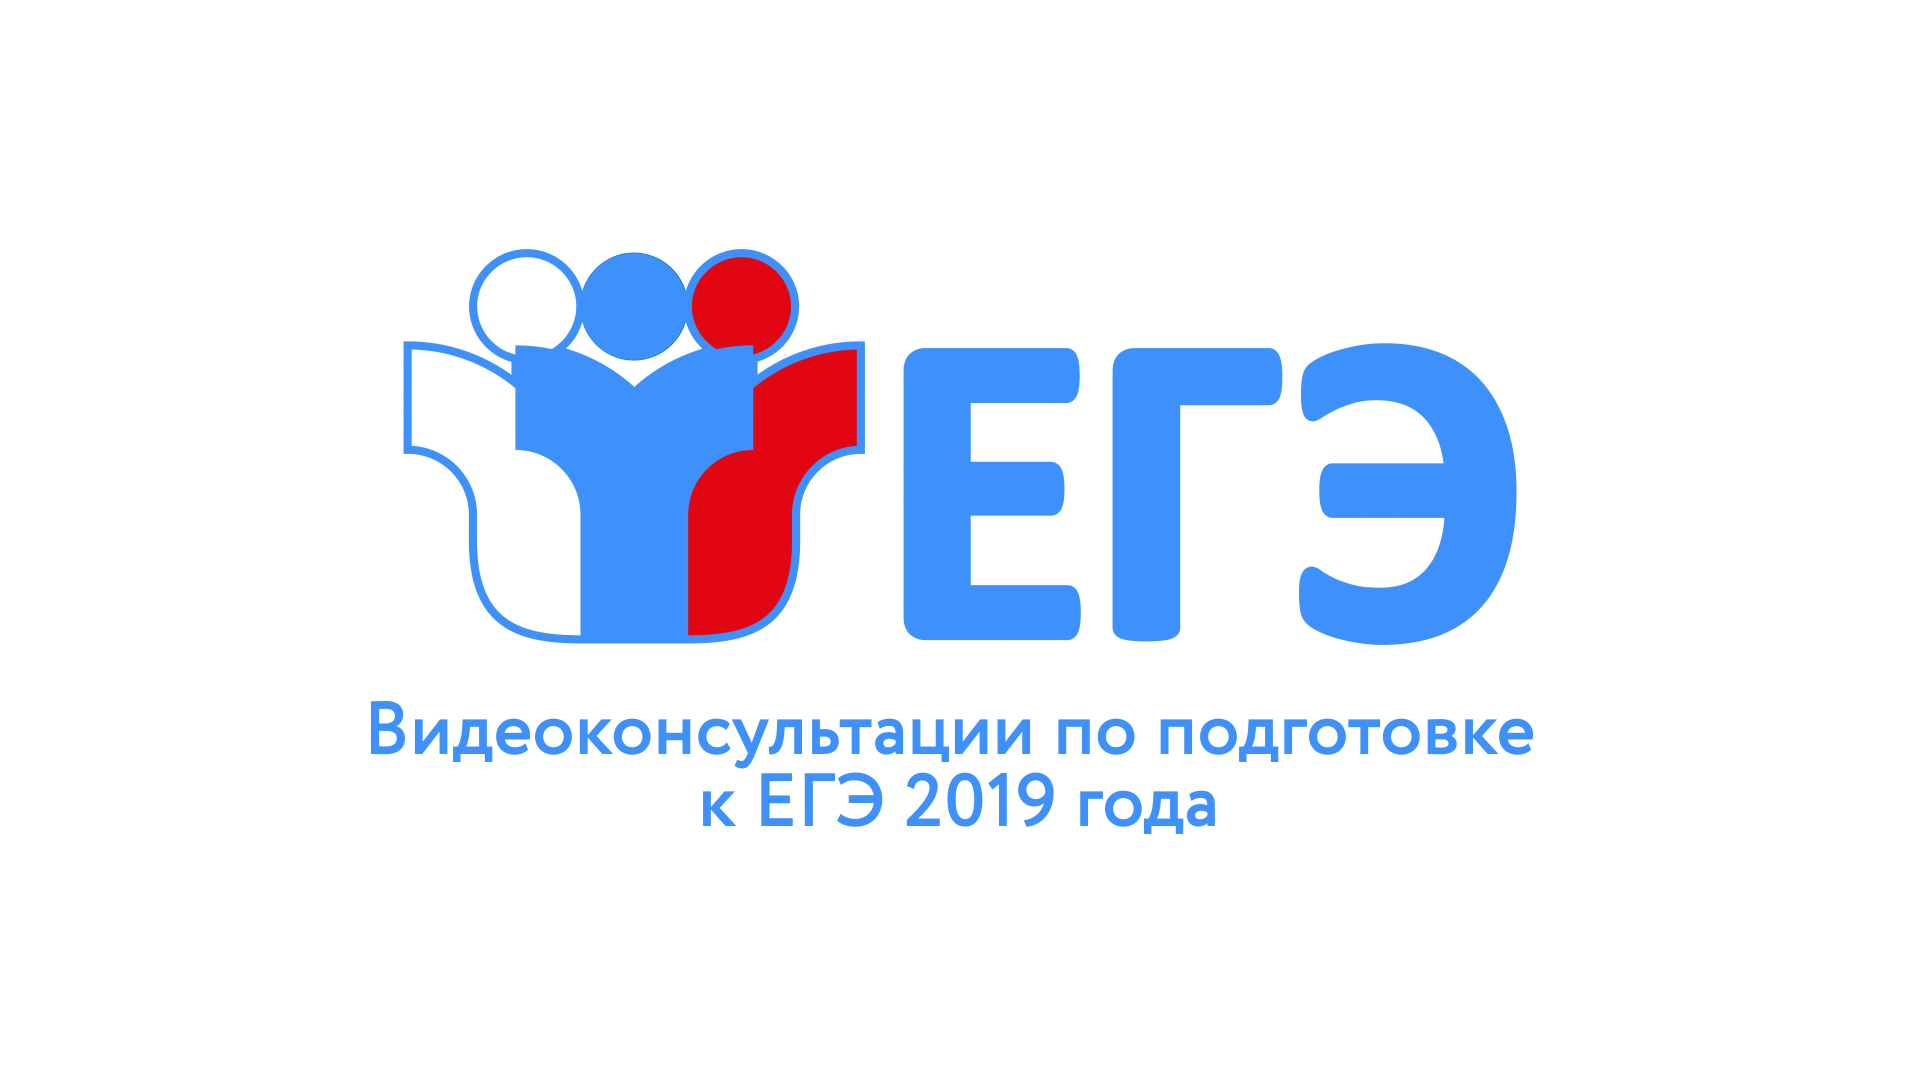 Рособрнадзор начинает публикацию видеорекомендаций по подготовке к ЕГЭ-2019